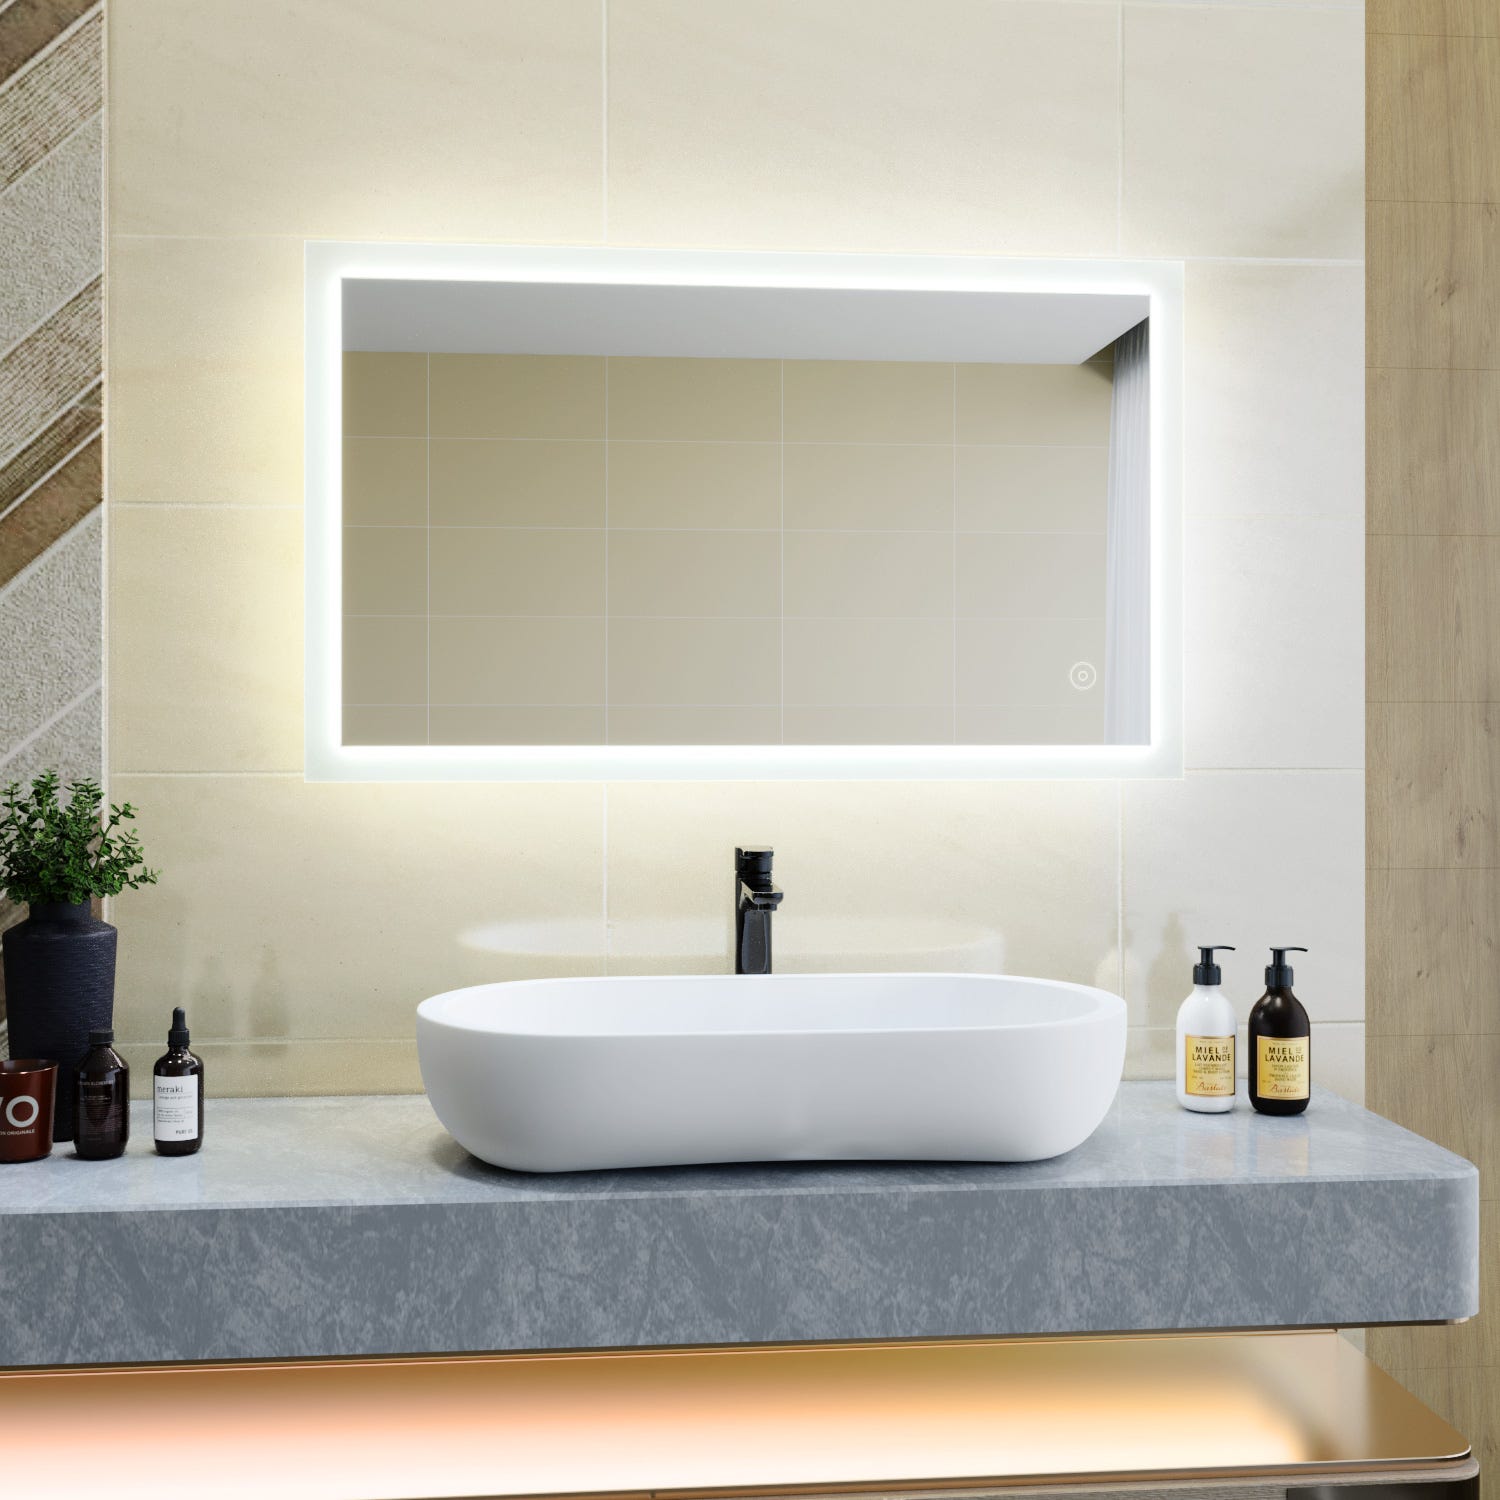 SIRHONA Miroir LED Salle de Bains éclairage avec contrôle de contact,désembuage,positionnement horizontal et vertical,100x60cm 0